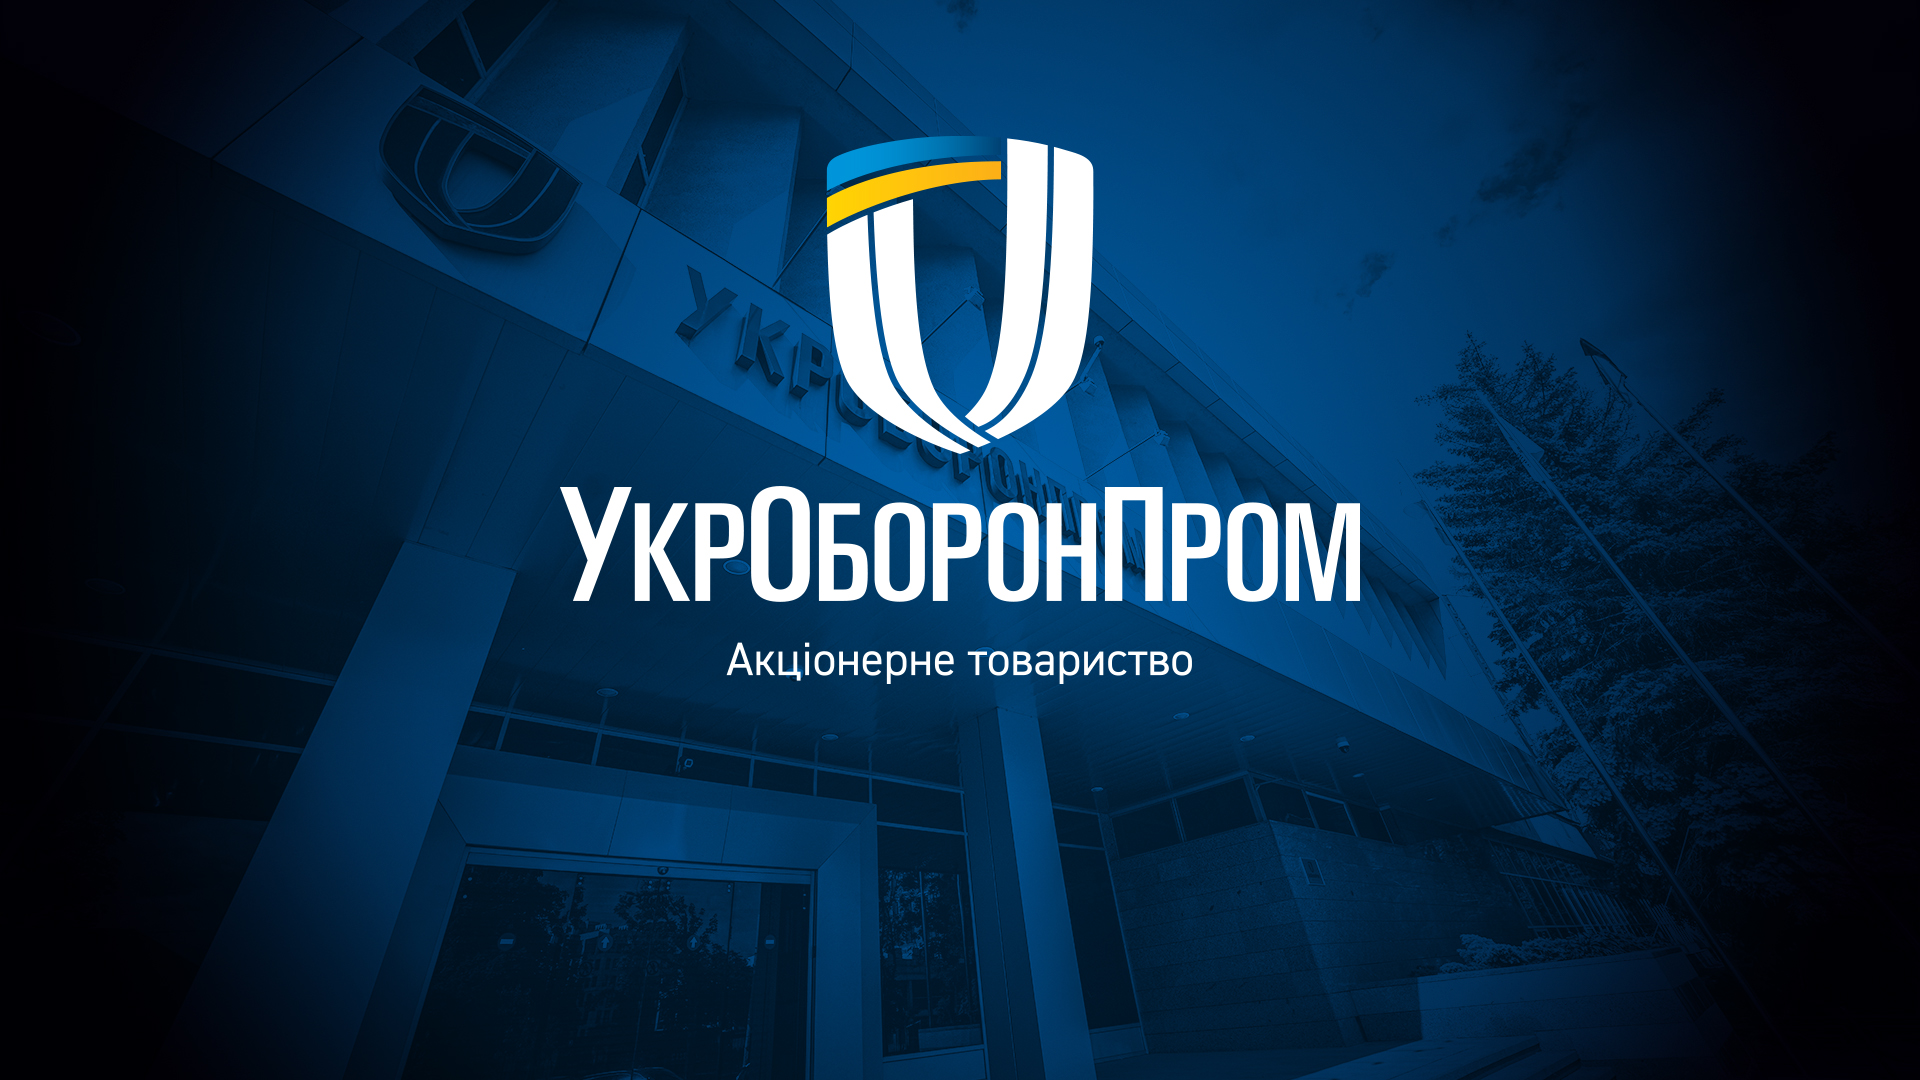 Керівники підприємств Укроборонпрому отримали державні нагороди від Президента України